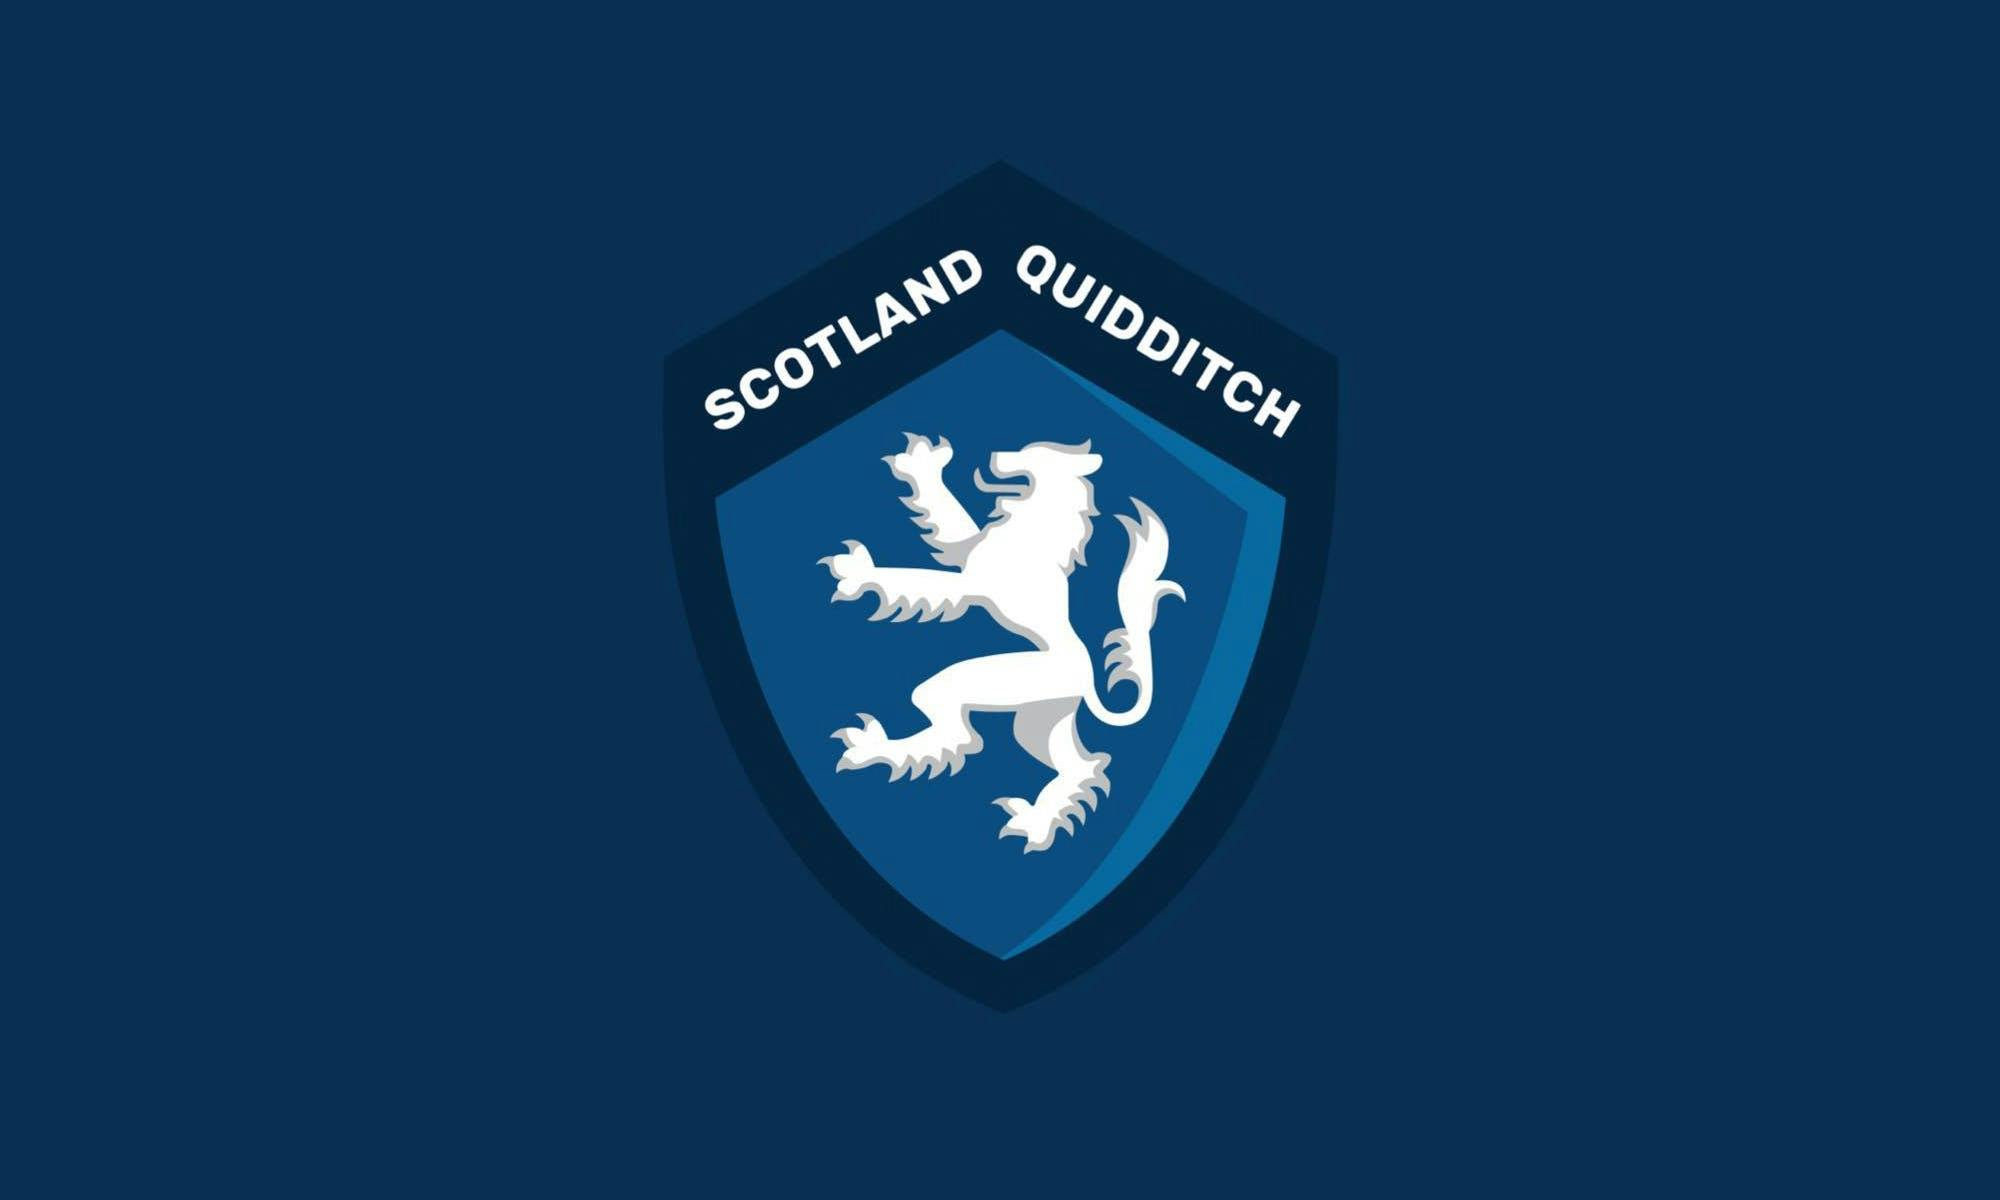 Quidditch Scotland Logo